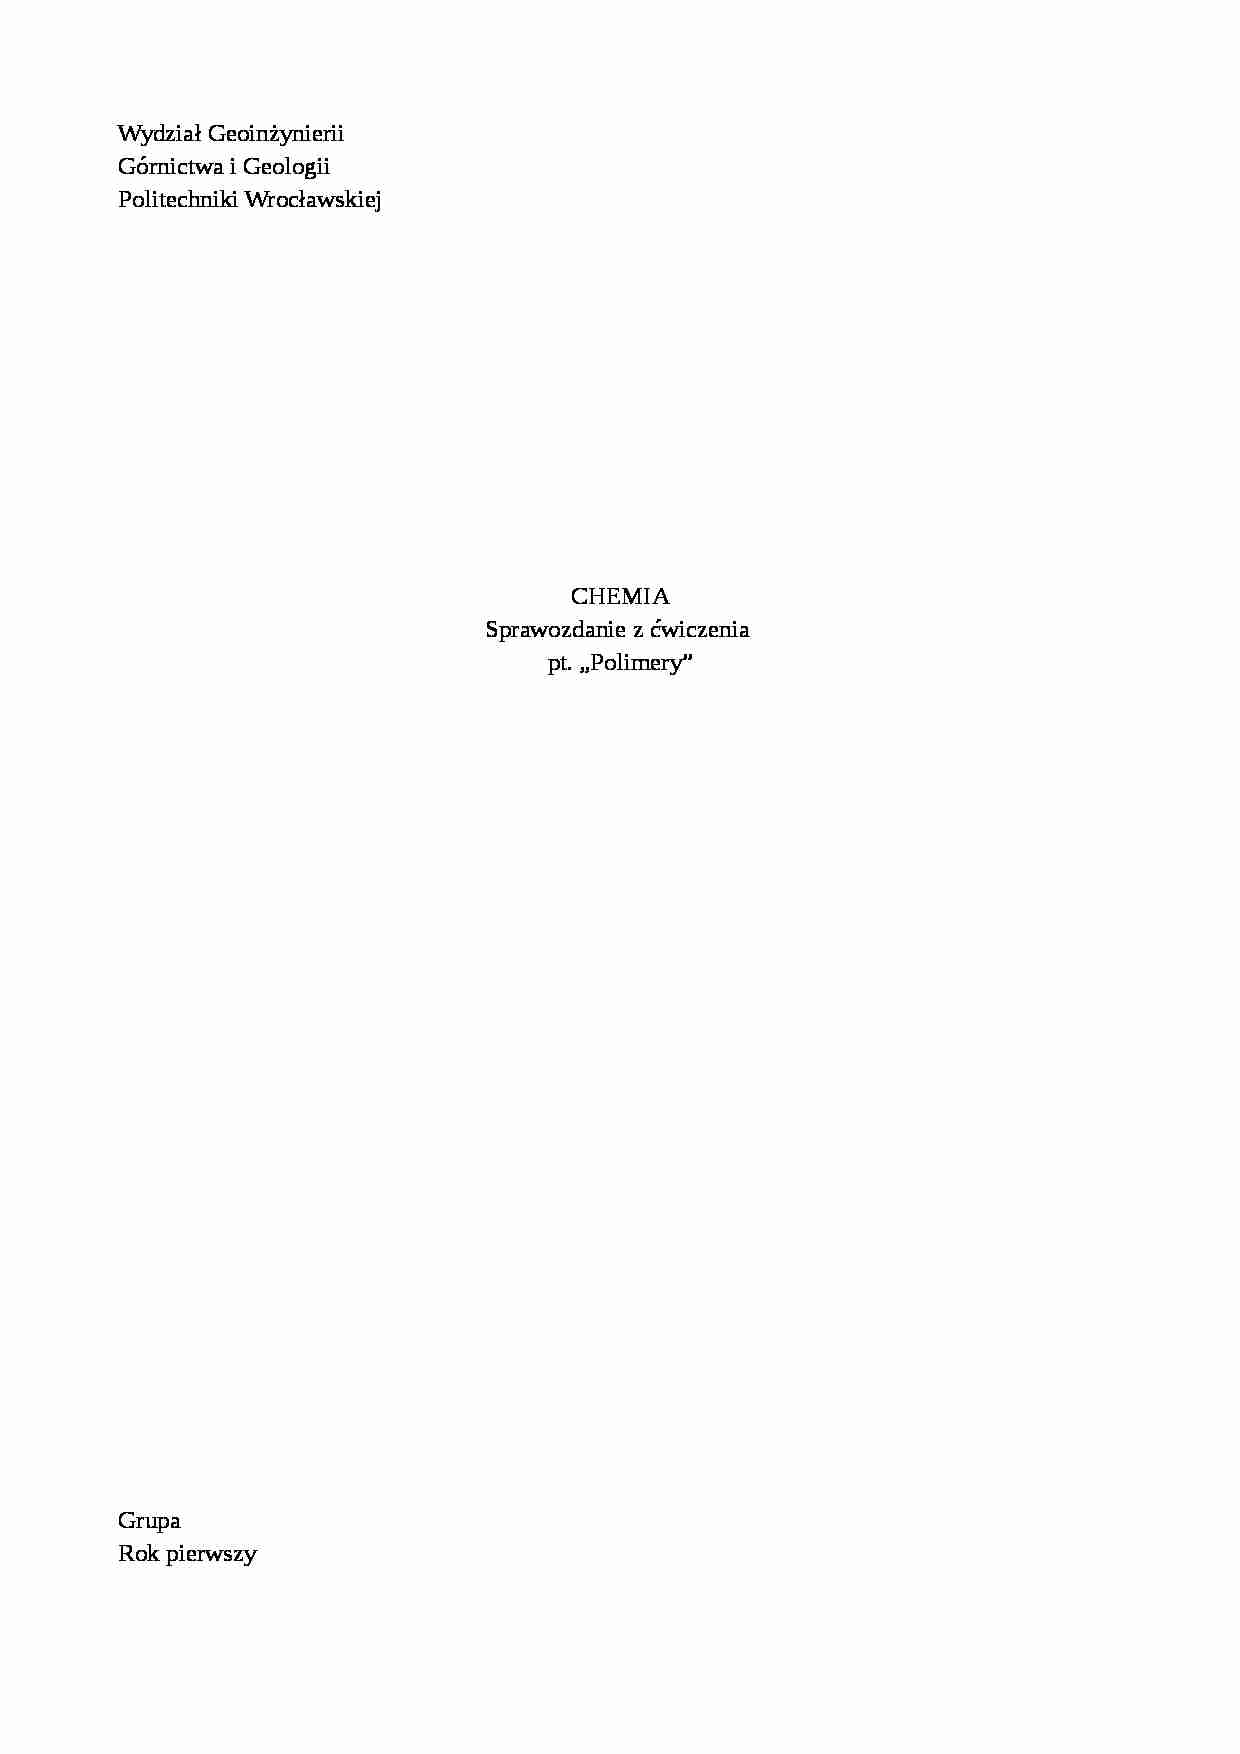 Polimery-opracowanie - Tworzywo epoksydowe  - strona 1